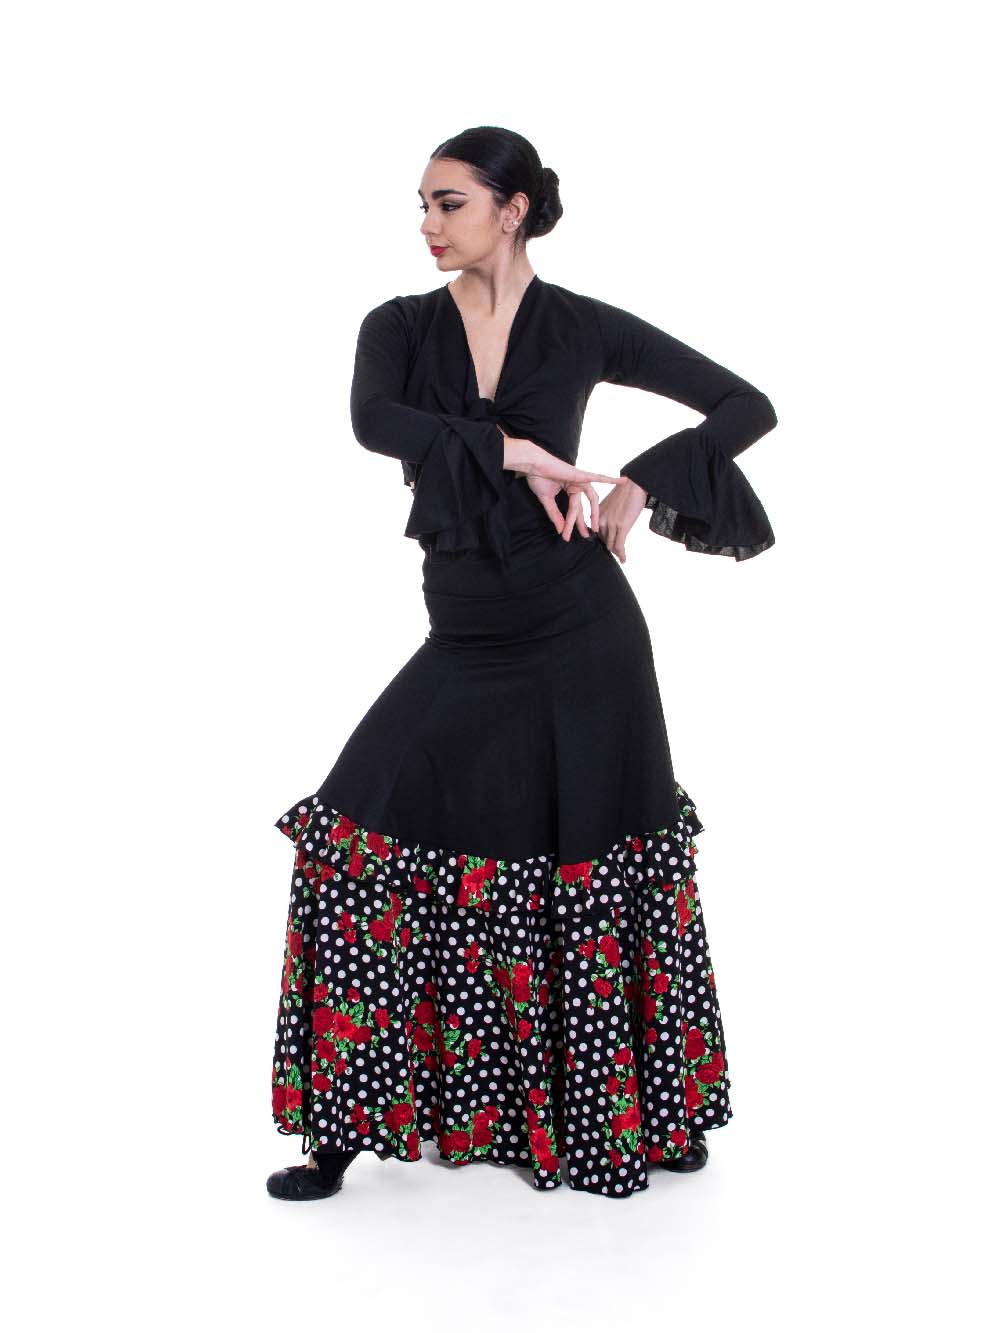 Falda flamenca de baile flamenco de uso profesional y ensayo. Modelo Cala